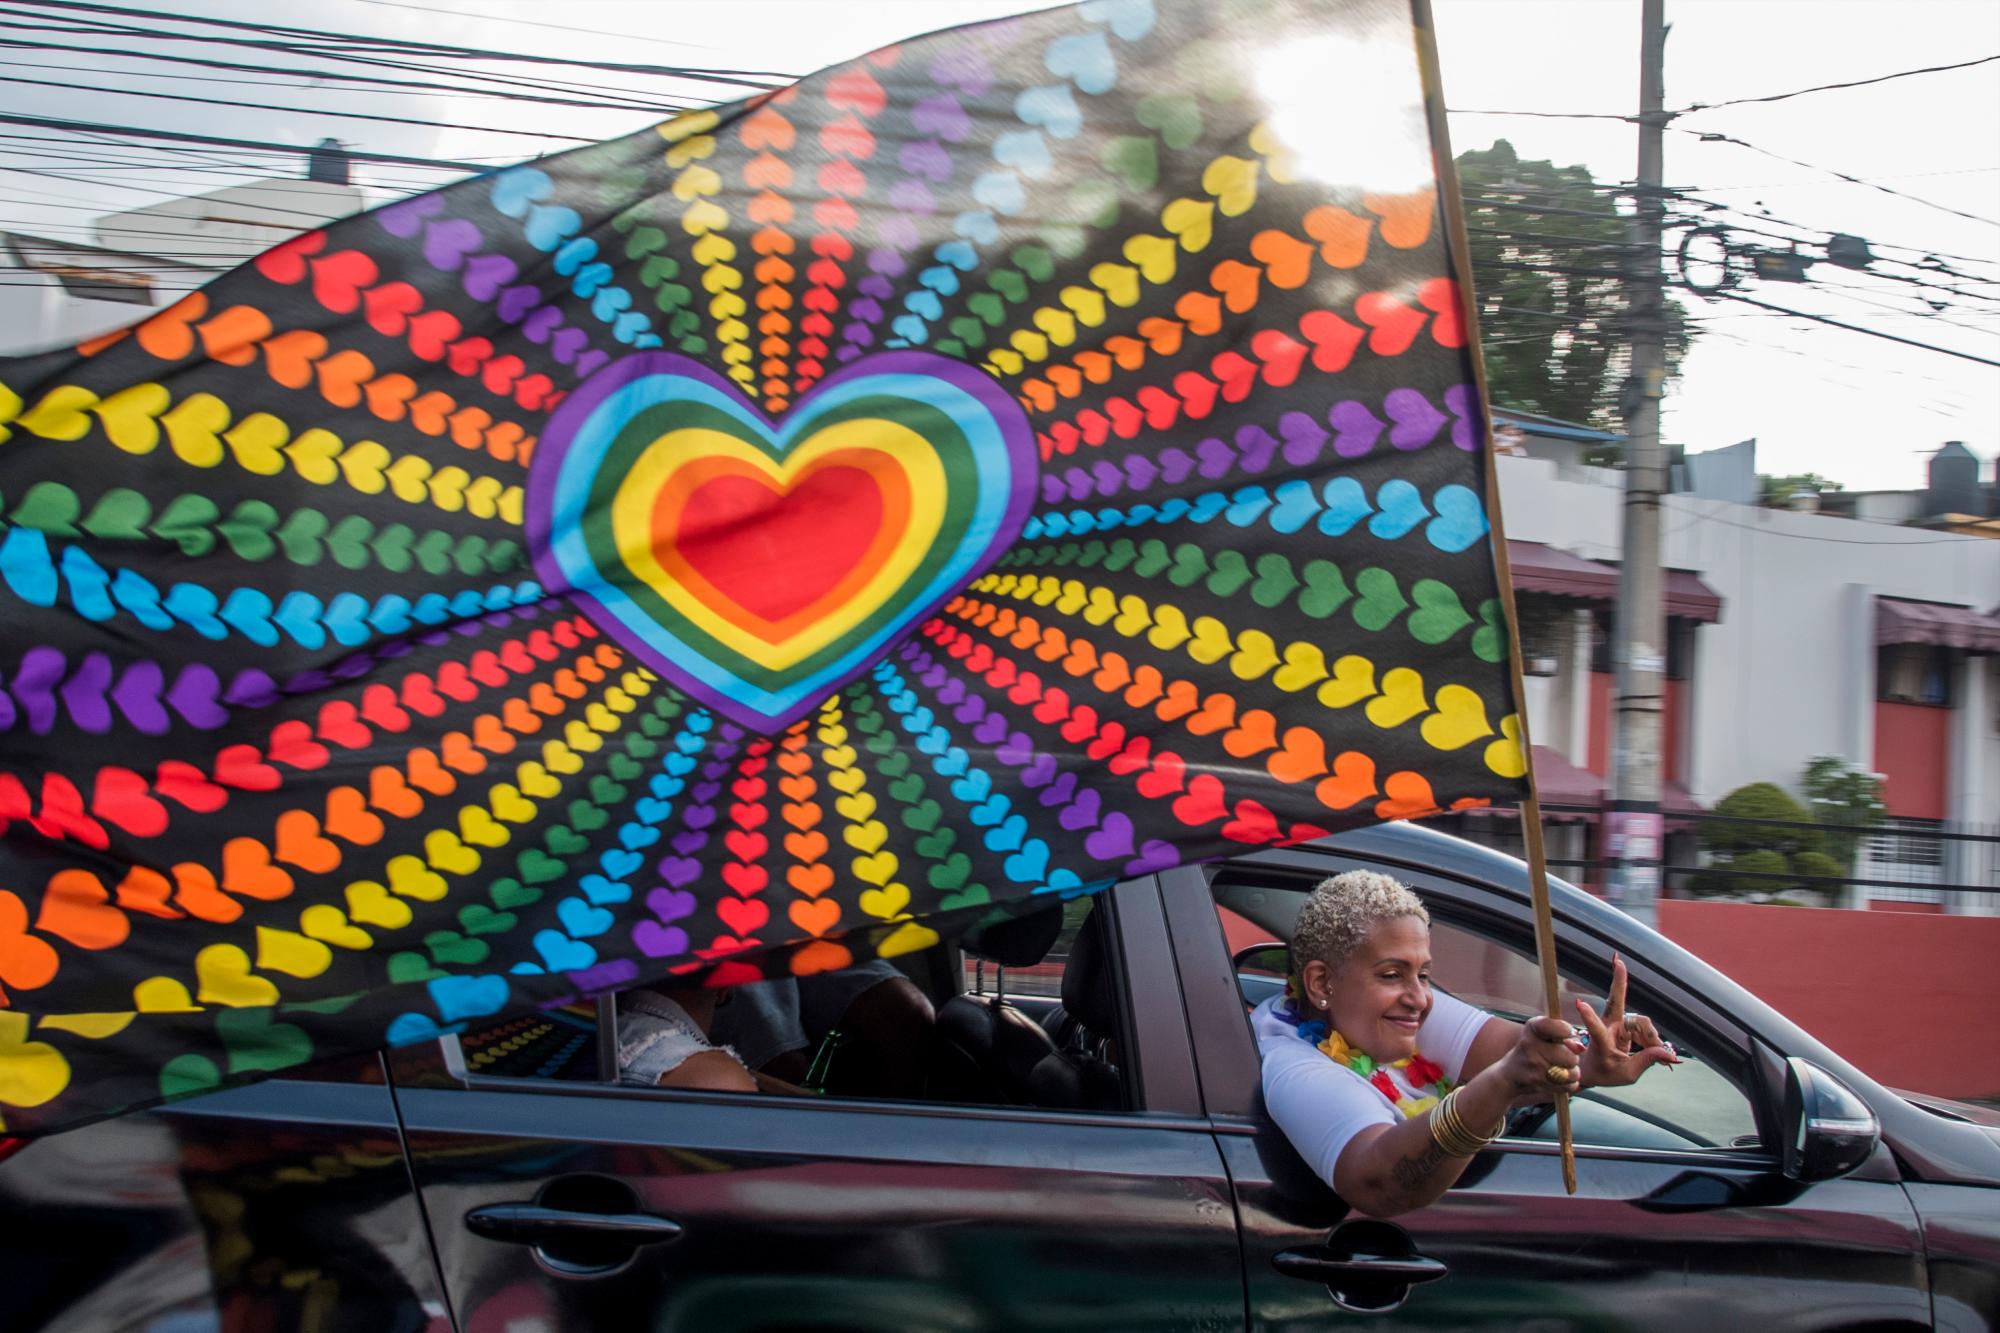 Participante de la Caravana Arcoíris que recorríó las calles de Santo Domingo manifestando por derechos del colectivo LGTB dominicano, el 07 de julio de 2019.